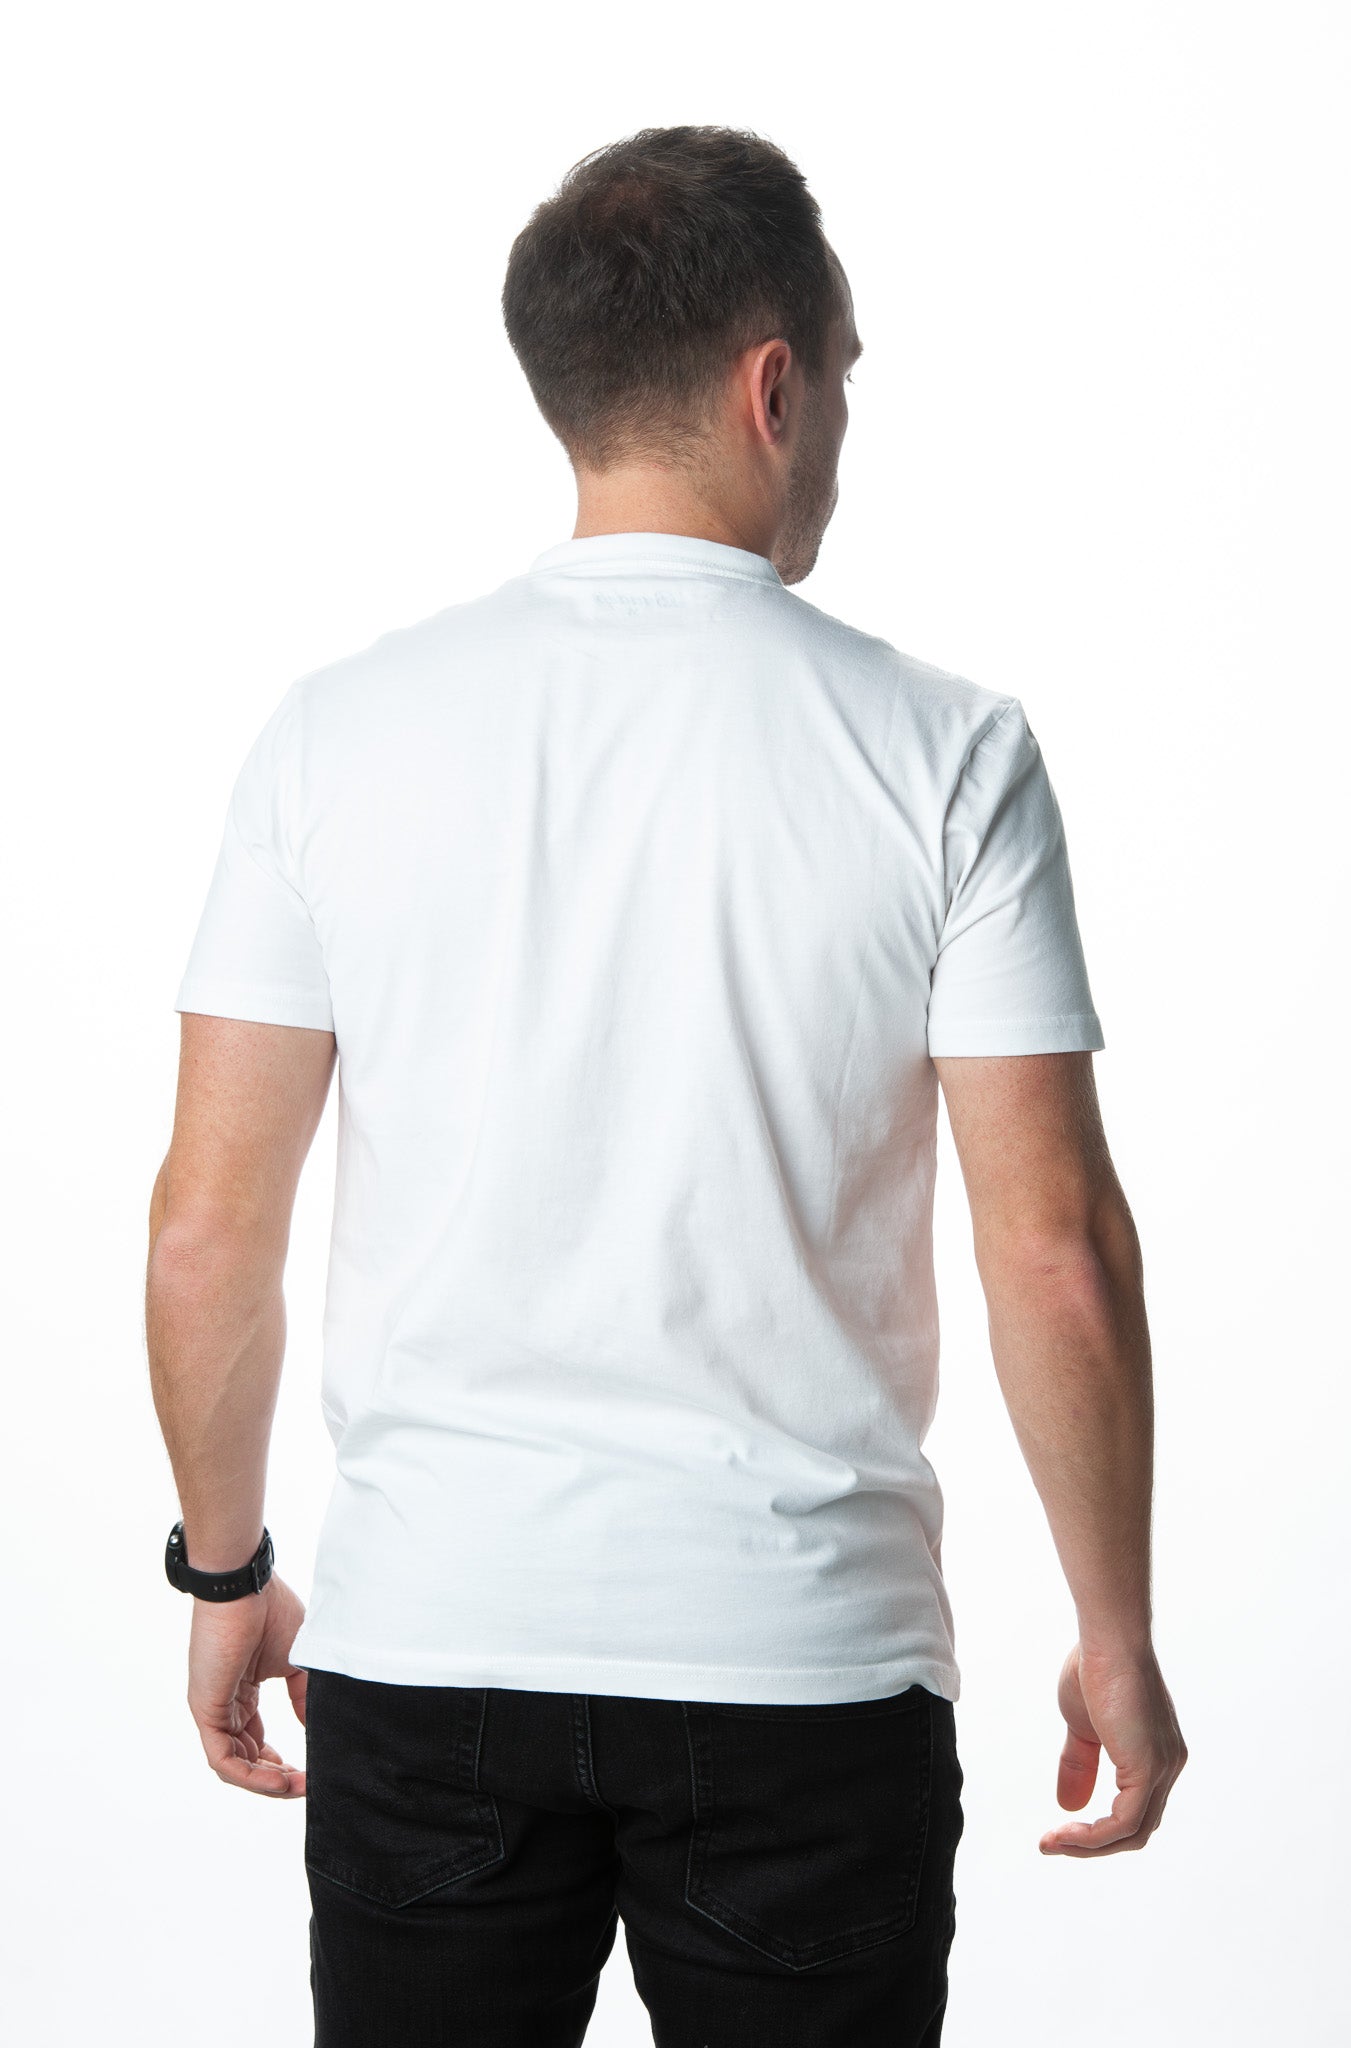 Unisex T-Shirt Taschen Grantler weiß